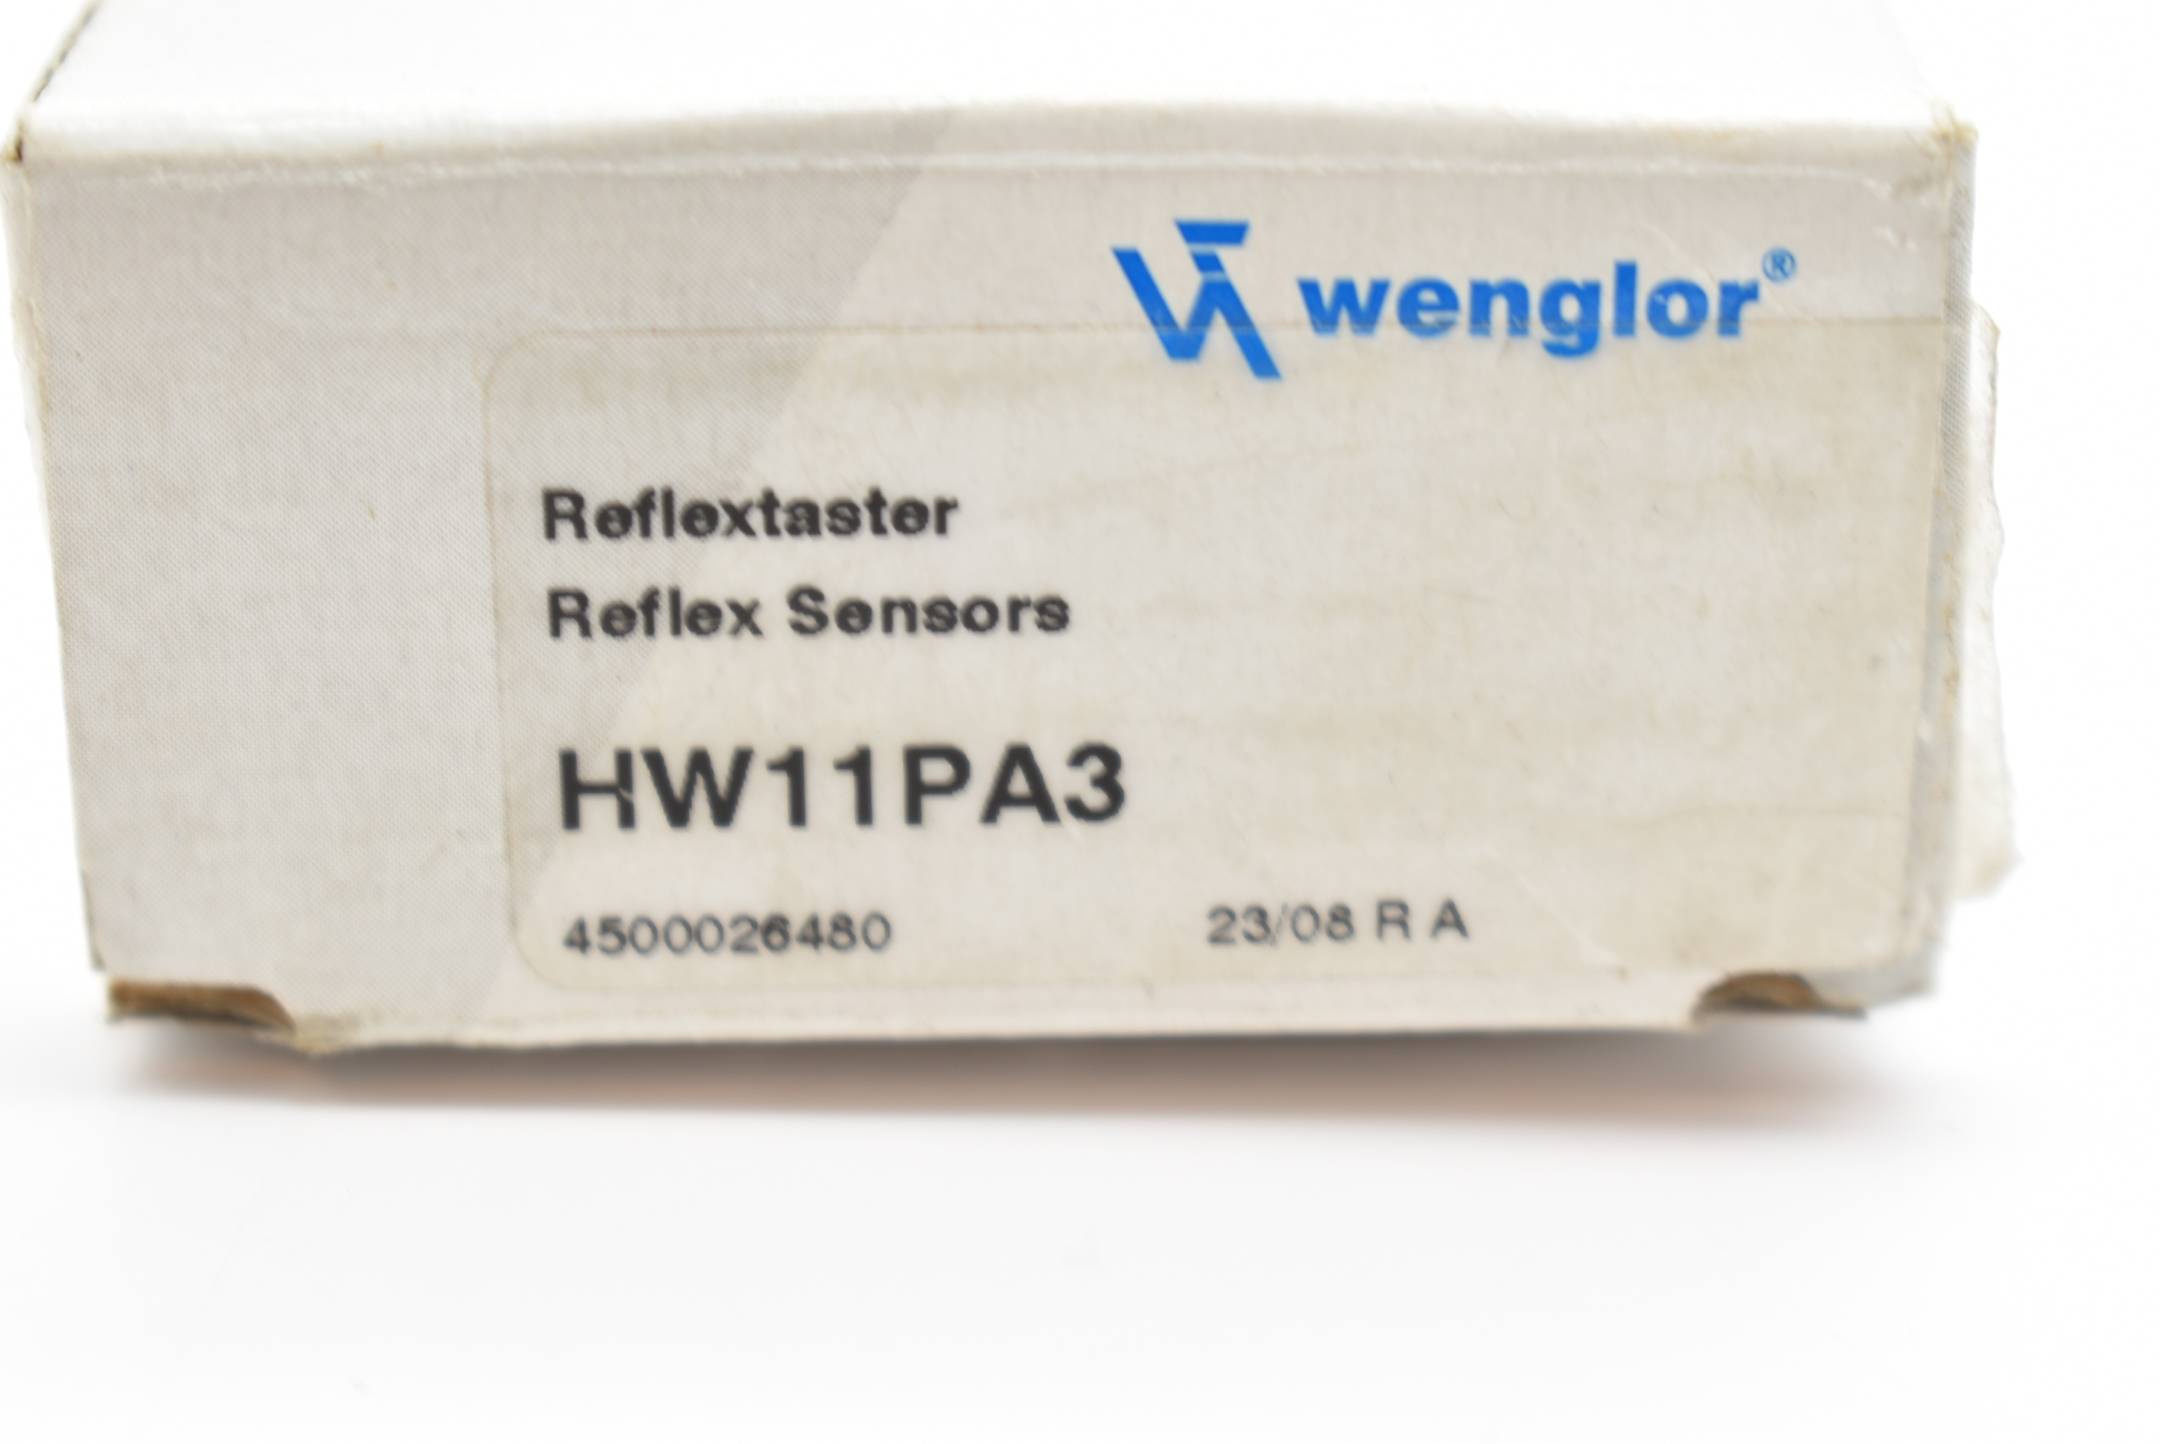 Wenglor Reflextaster HW11PA3